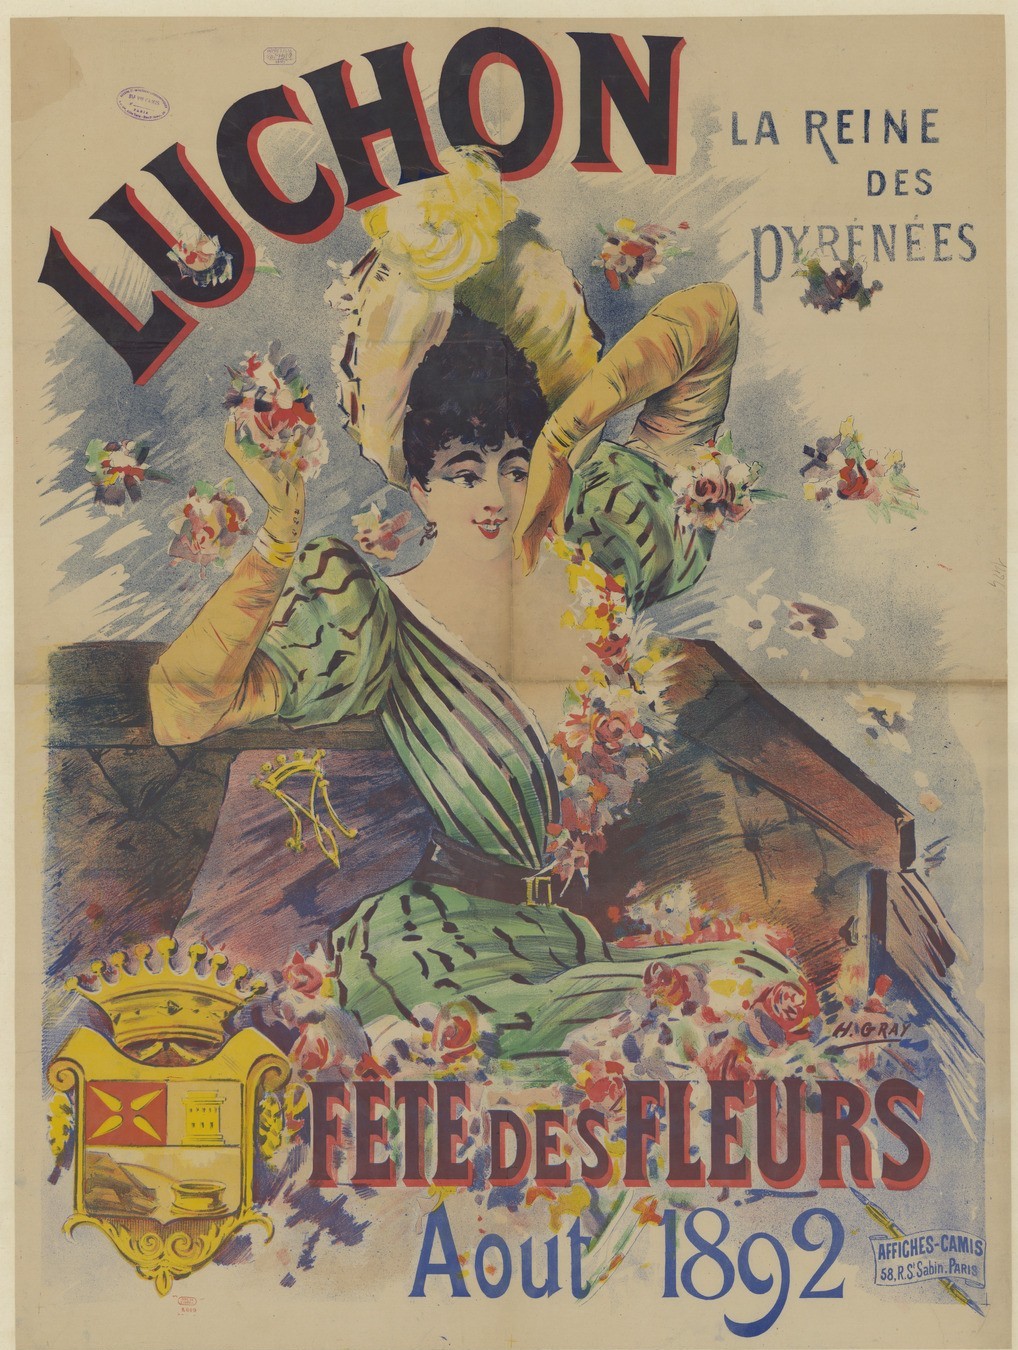 Luchon, la reine des Pyrénées. Fête des fleurs. Aout 1892 : [affiche] / H. Gray